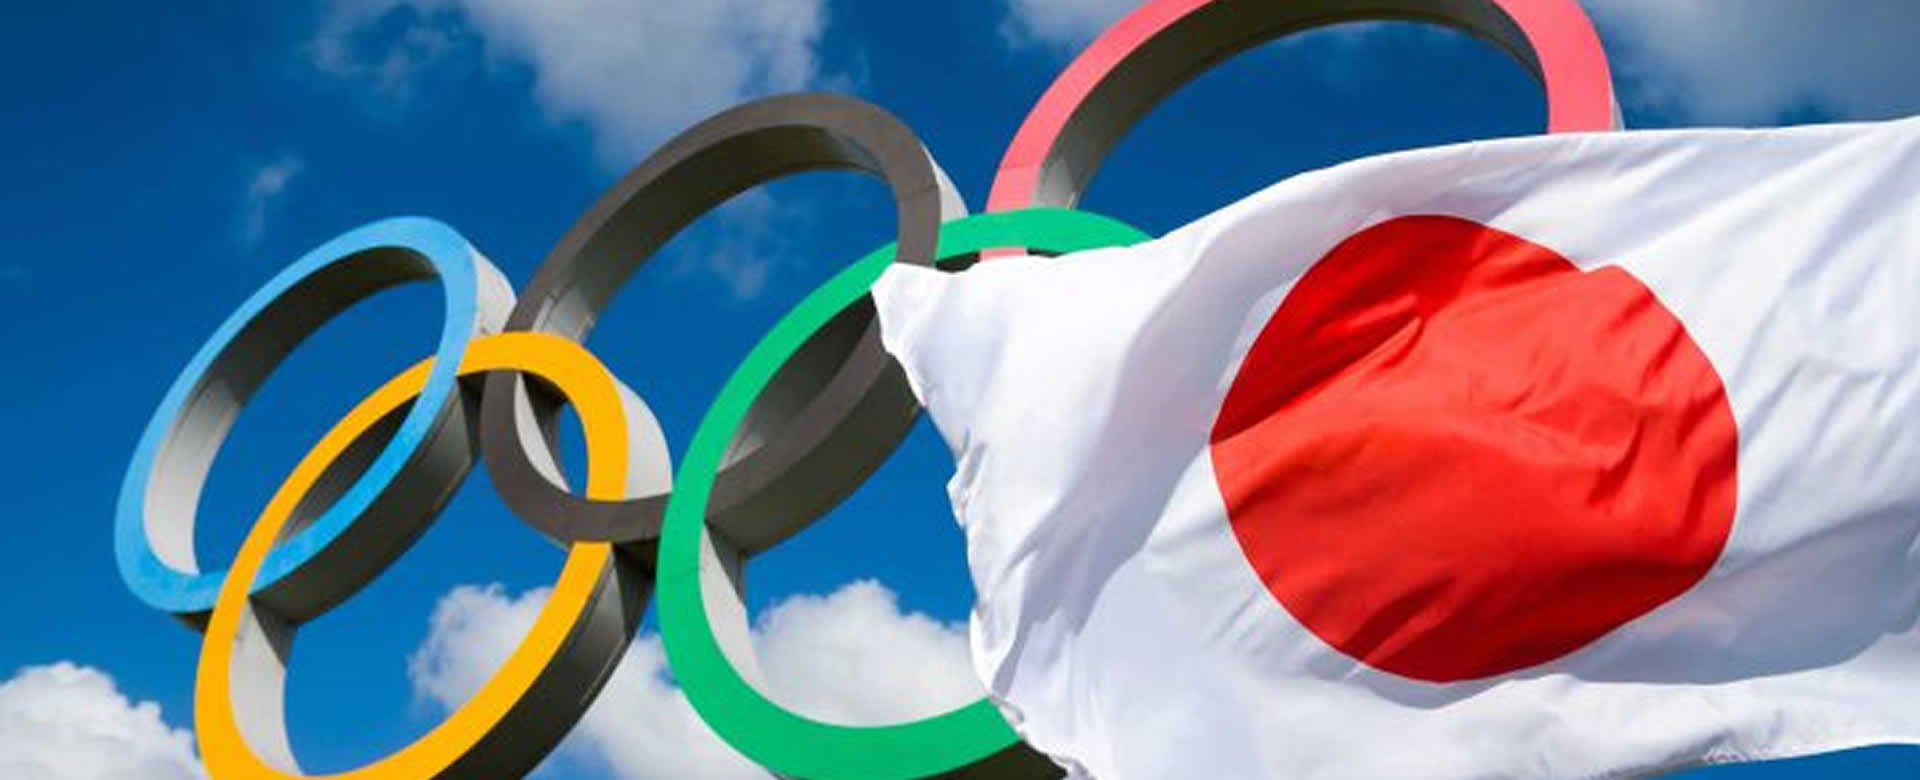 Japón cancela Juegos Olímpicos por rebrote de COVID, informa The Times